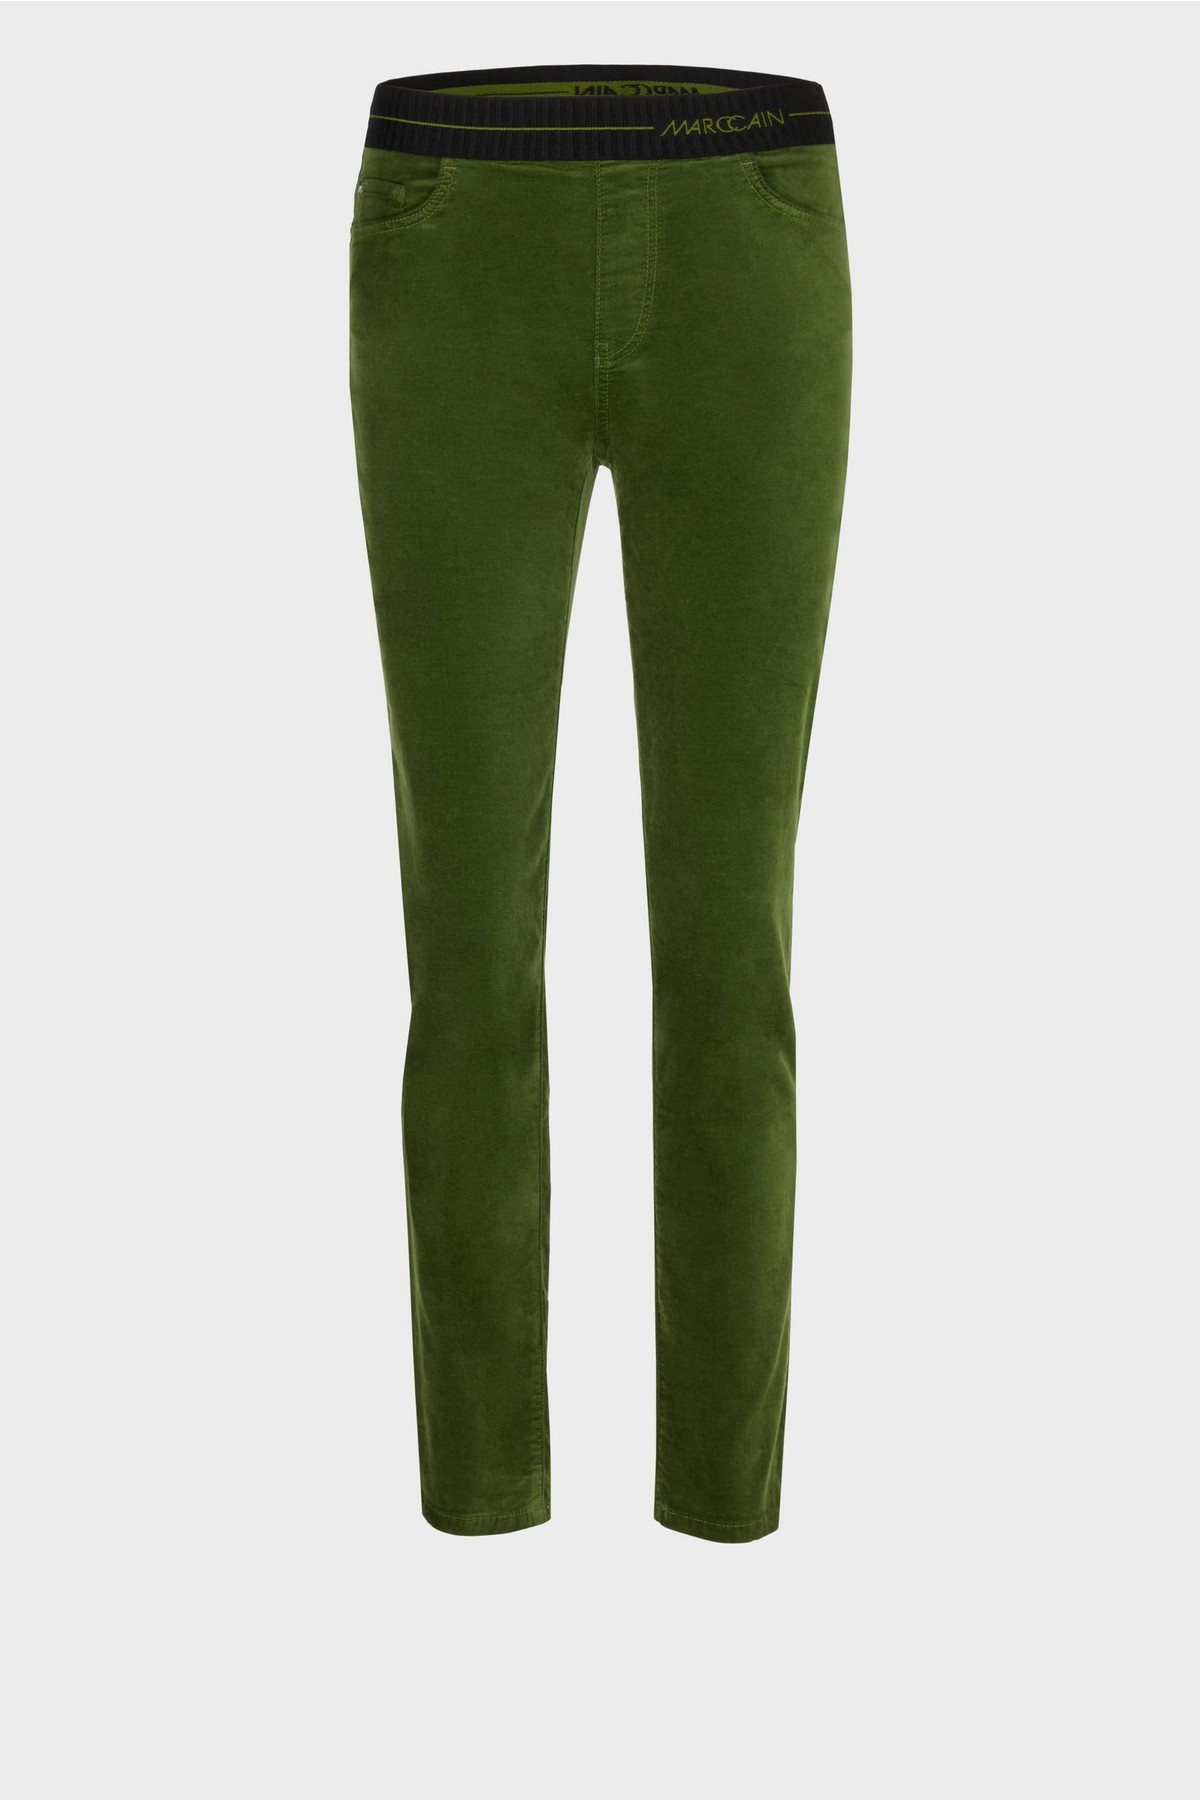 Broek 5-pocket slim fit in de kleur groen van het merk Marc Cain Collections